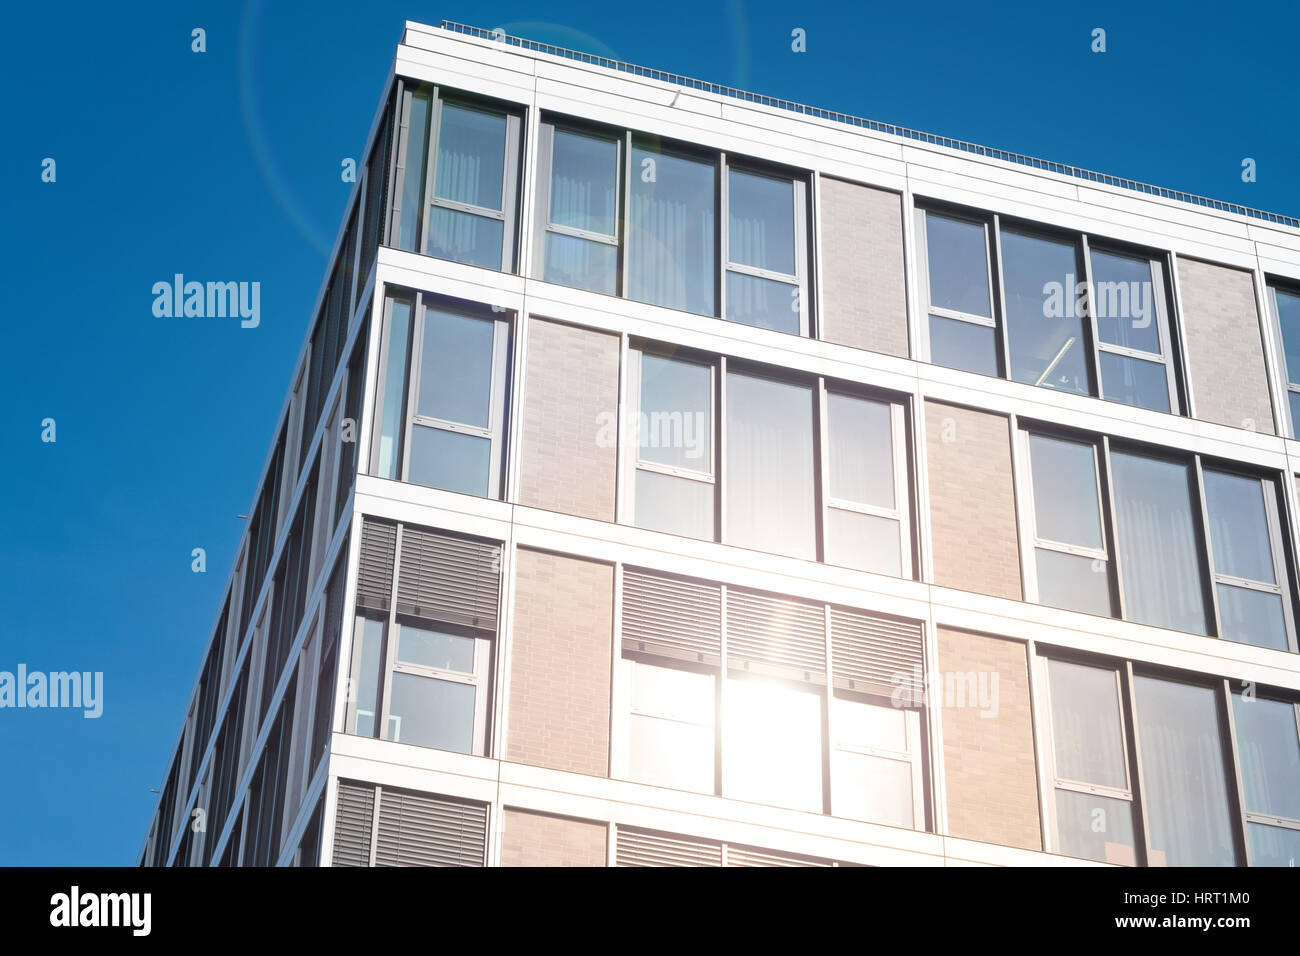 building exterior - apartment house facade Stock Photo